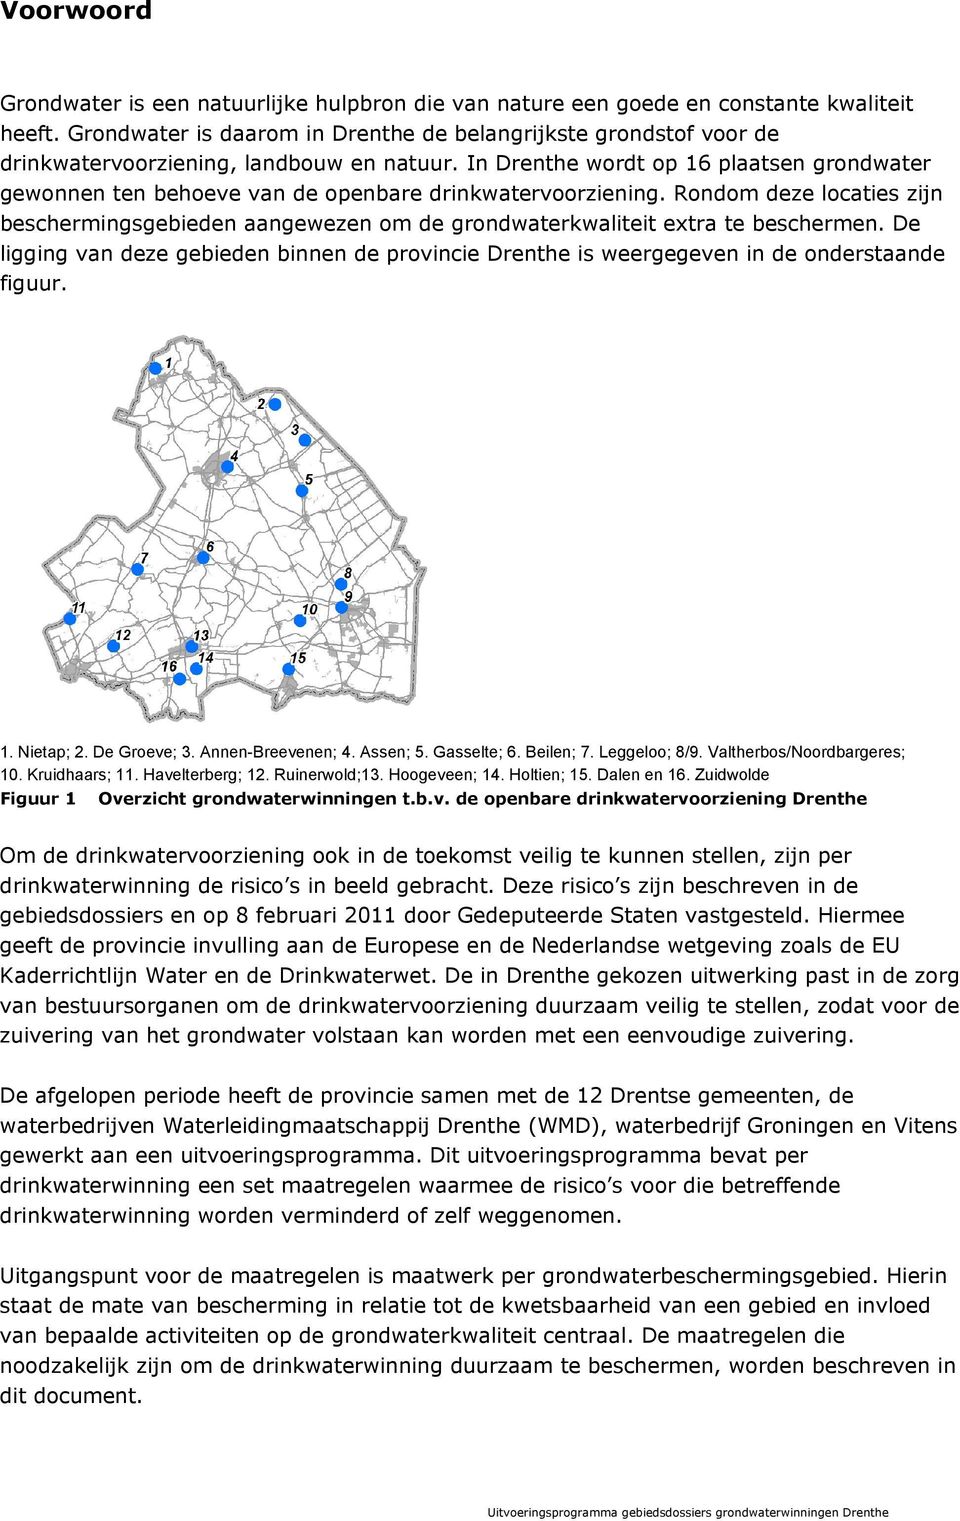 In Drenthe wordt op 16 plaatsen grondwater gewonnen ten behoeve van de openbare drinkwatervoorziening.